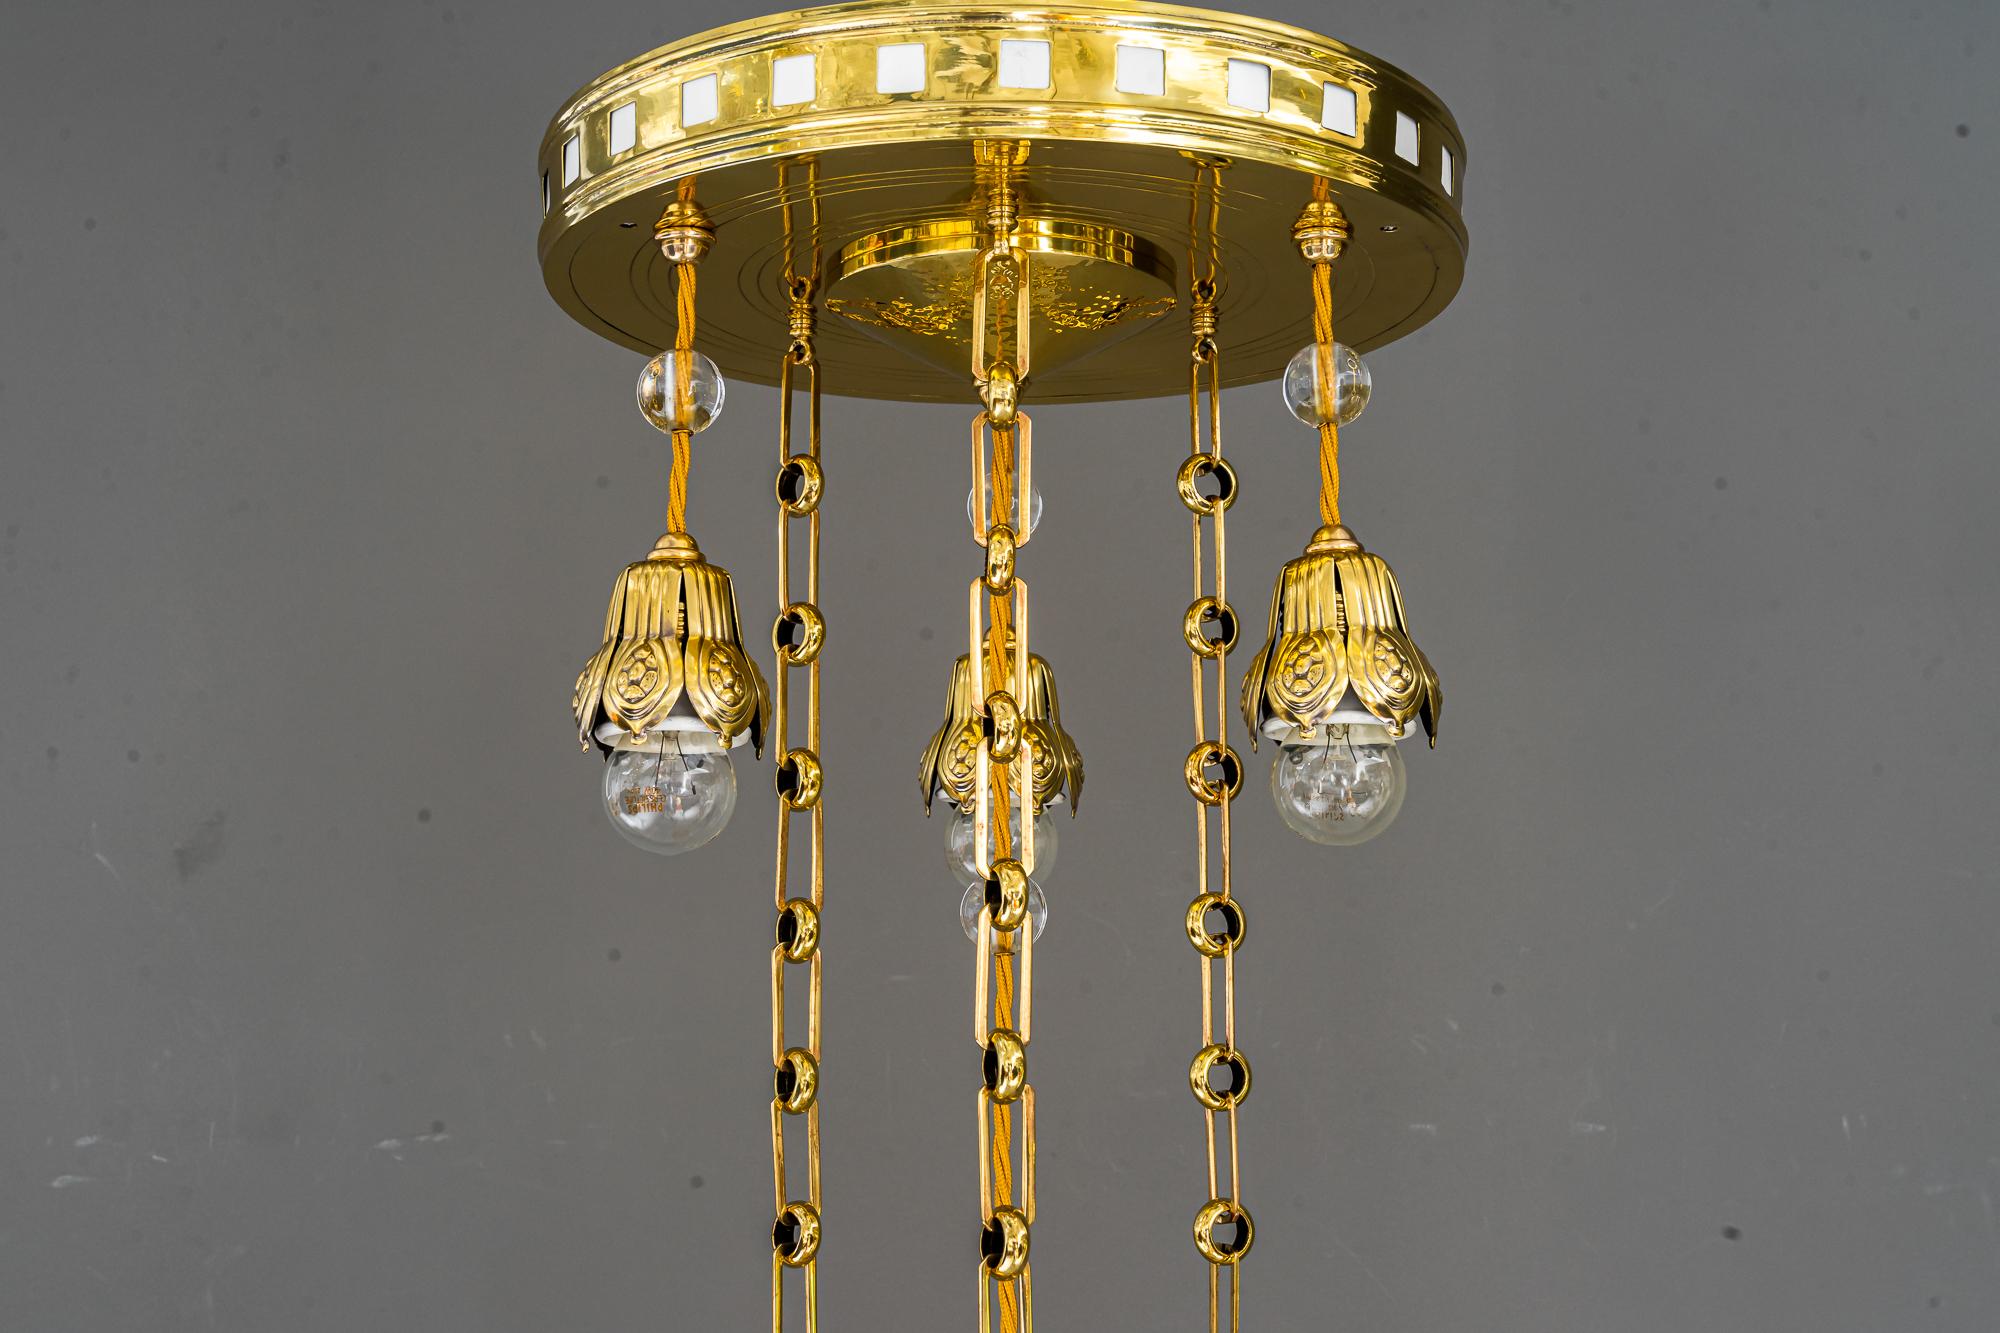 Jugendstil chandelier, Vienna, 1910s.
Polished and stove enameled.
Original high quality glass shade.